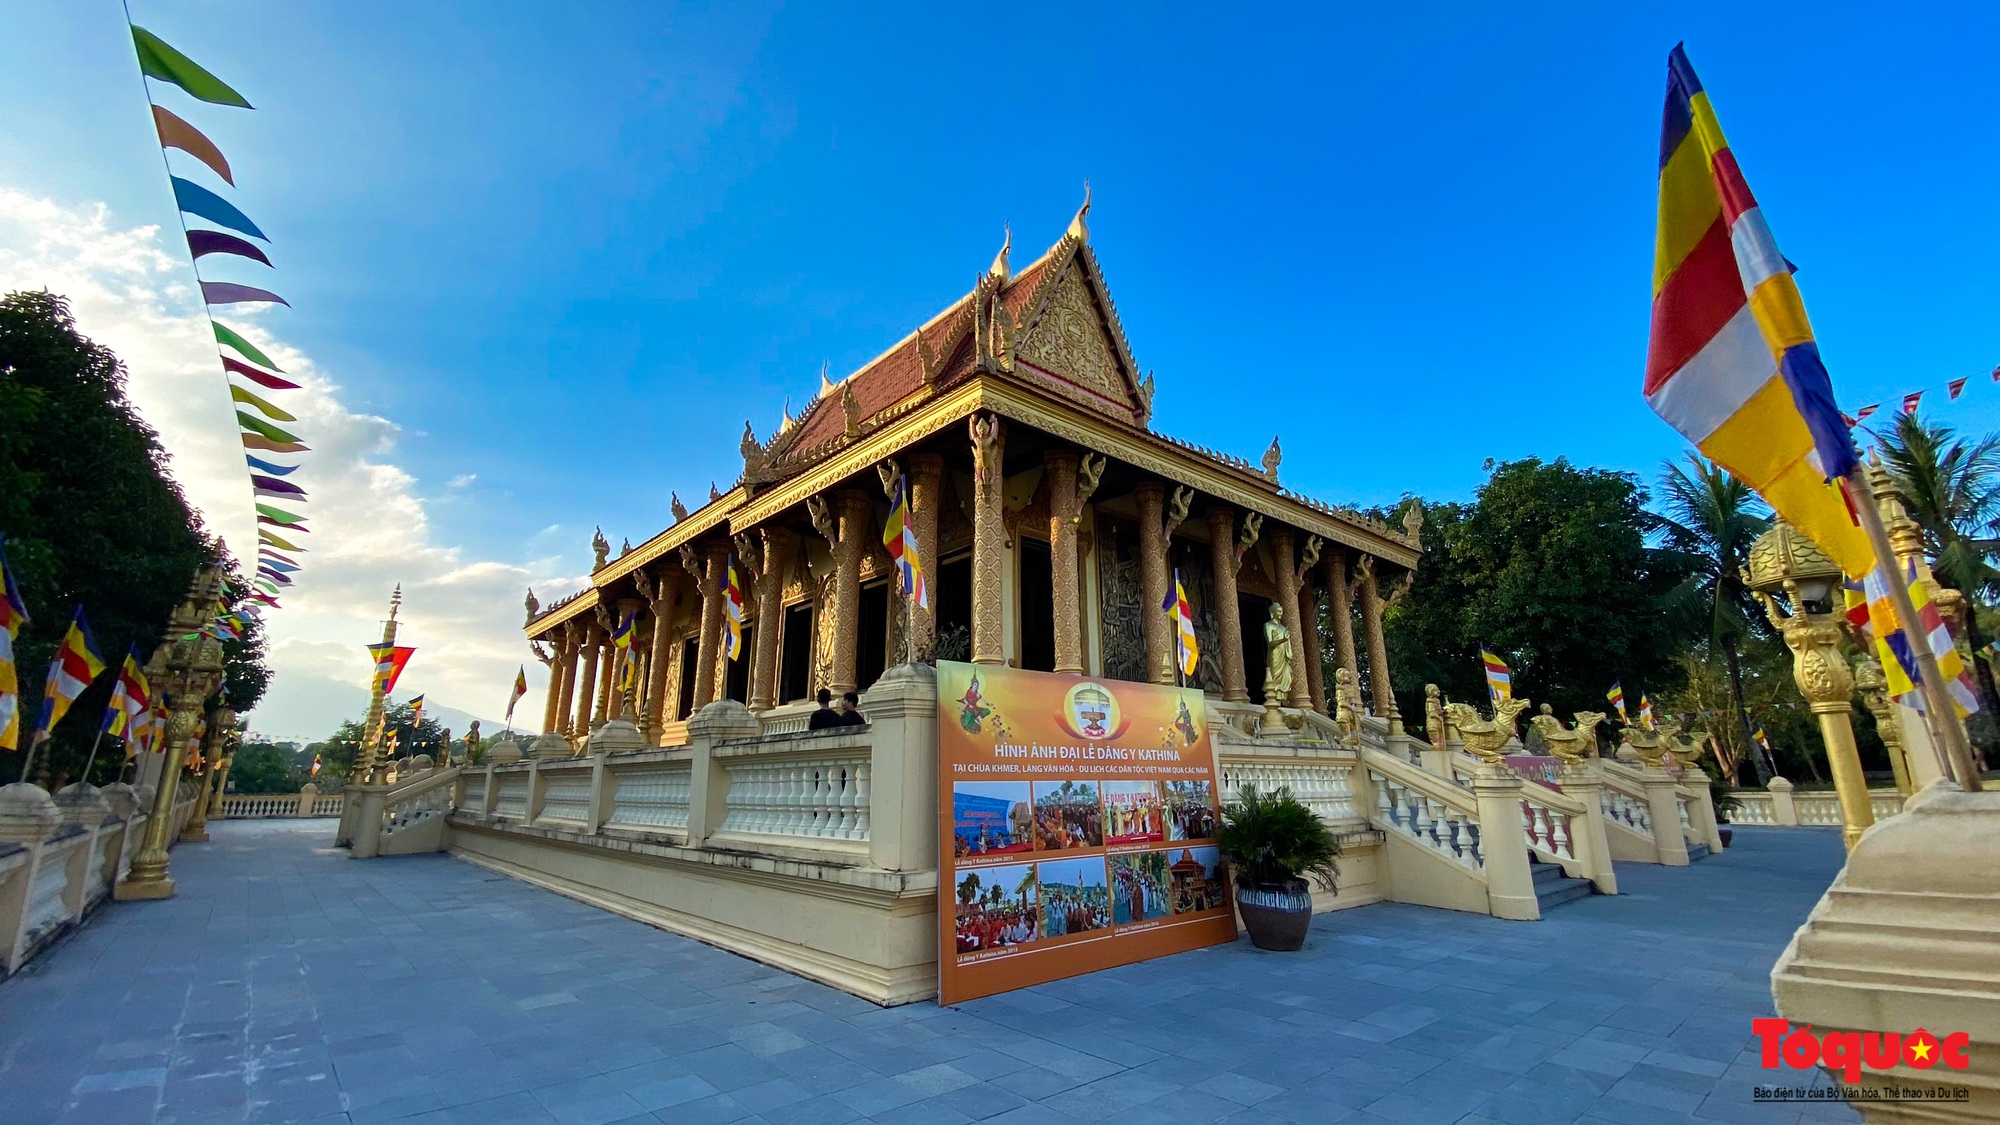 Khám phá kiến trúc chùa Khmer duy nhất ở Hà Nội - Ảnh 7.